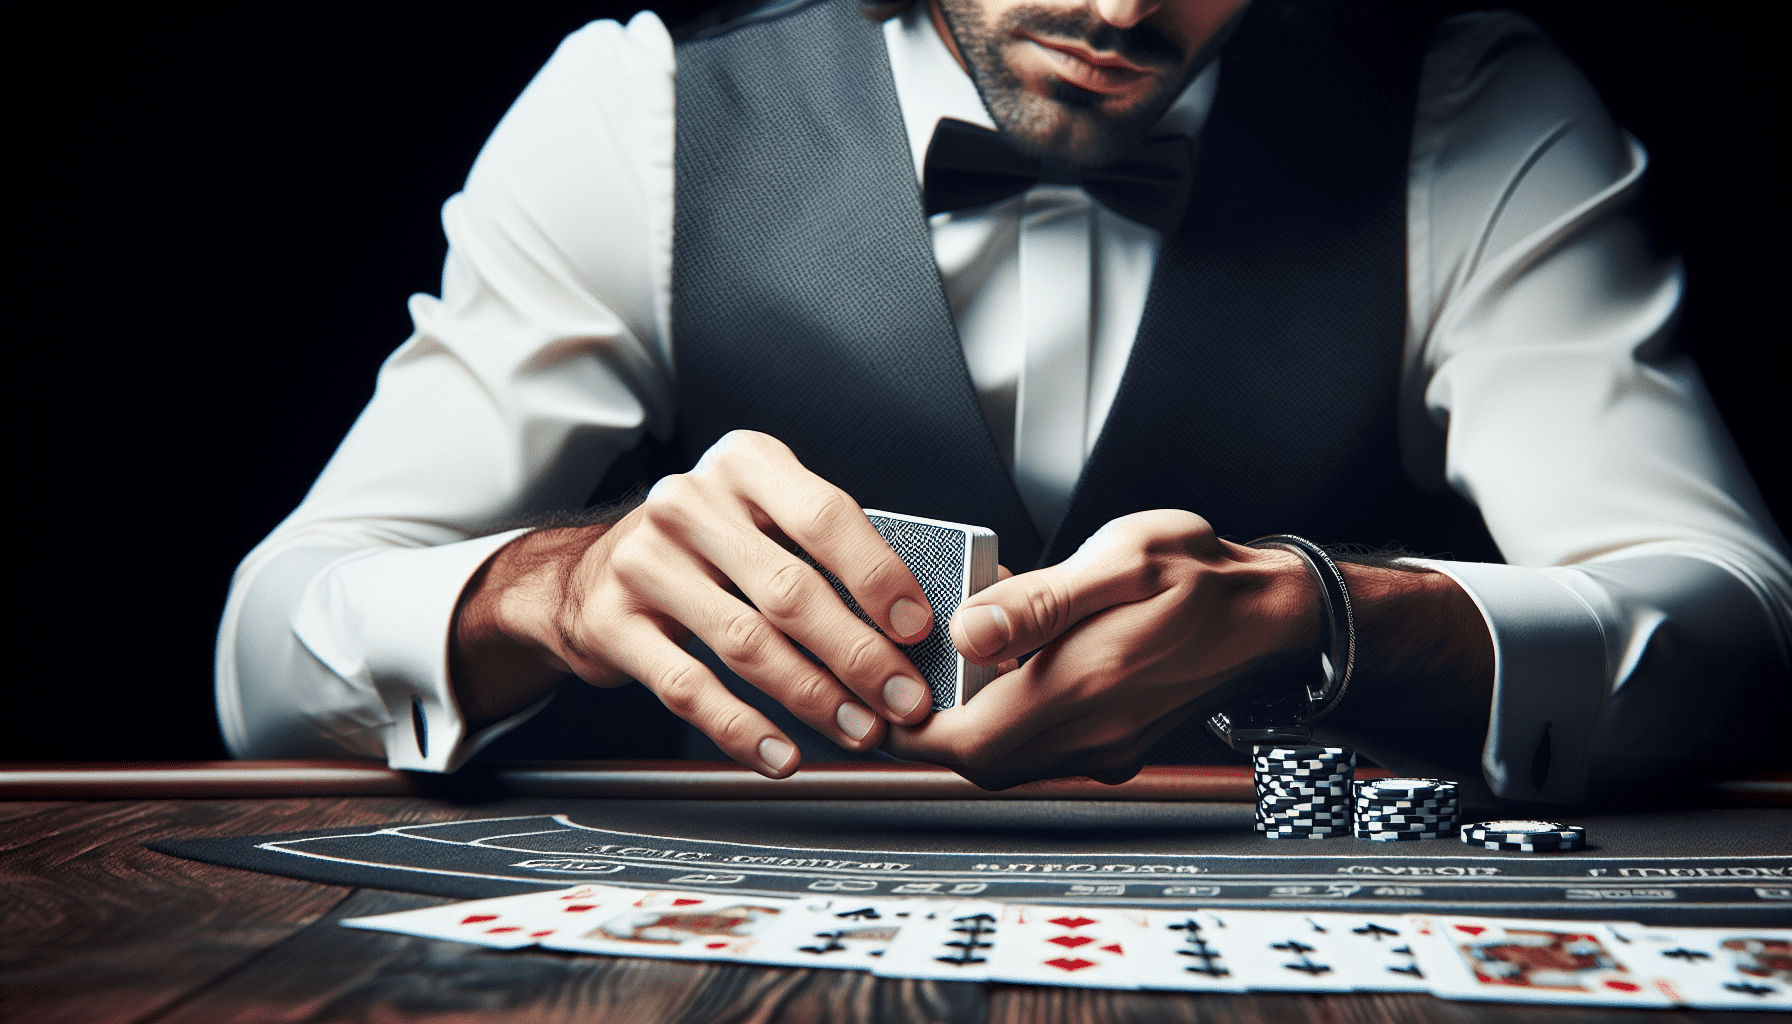 how do online casinos handle live dealer blackjack games